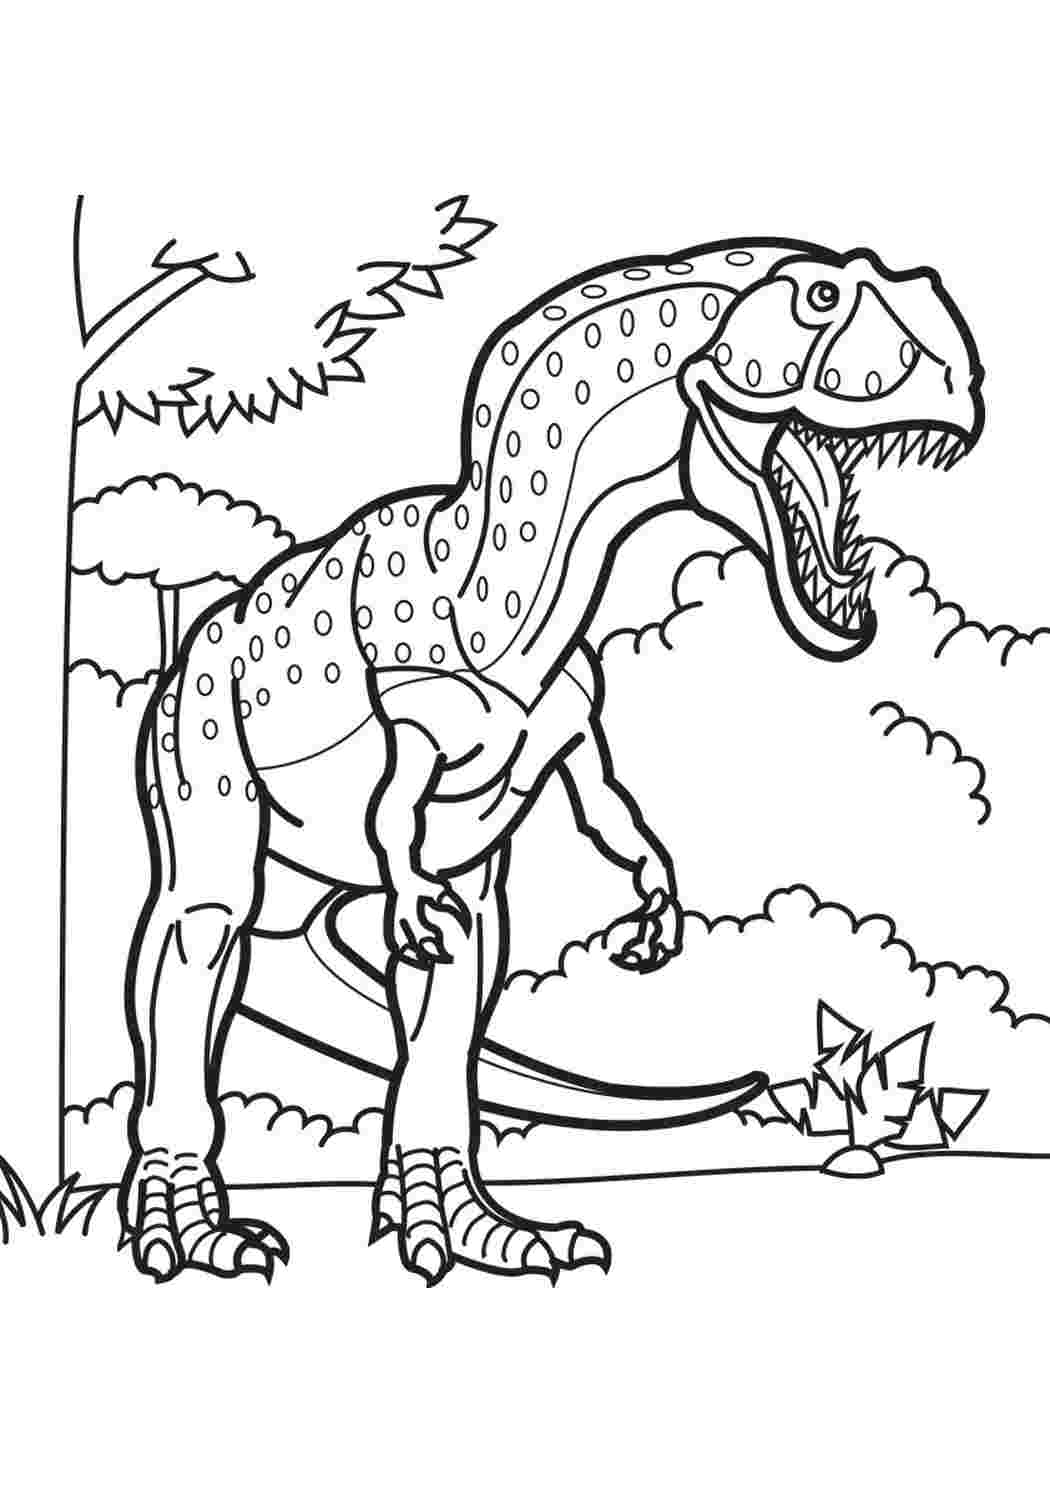 Динозавр раскраска распечатать а4. Гигантозавр раскраска. Динозавры / раскраска. Раскраска "Динозаврики". Динозавр раскраска для детей.